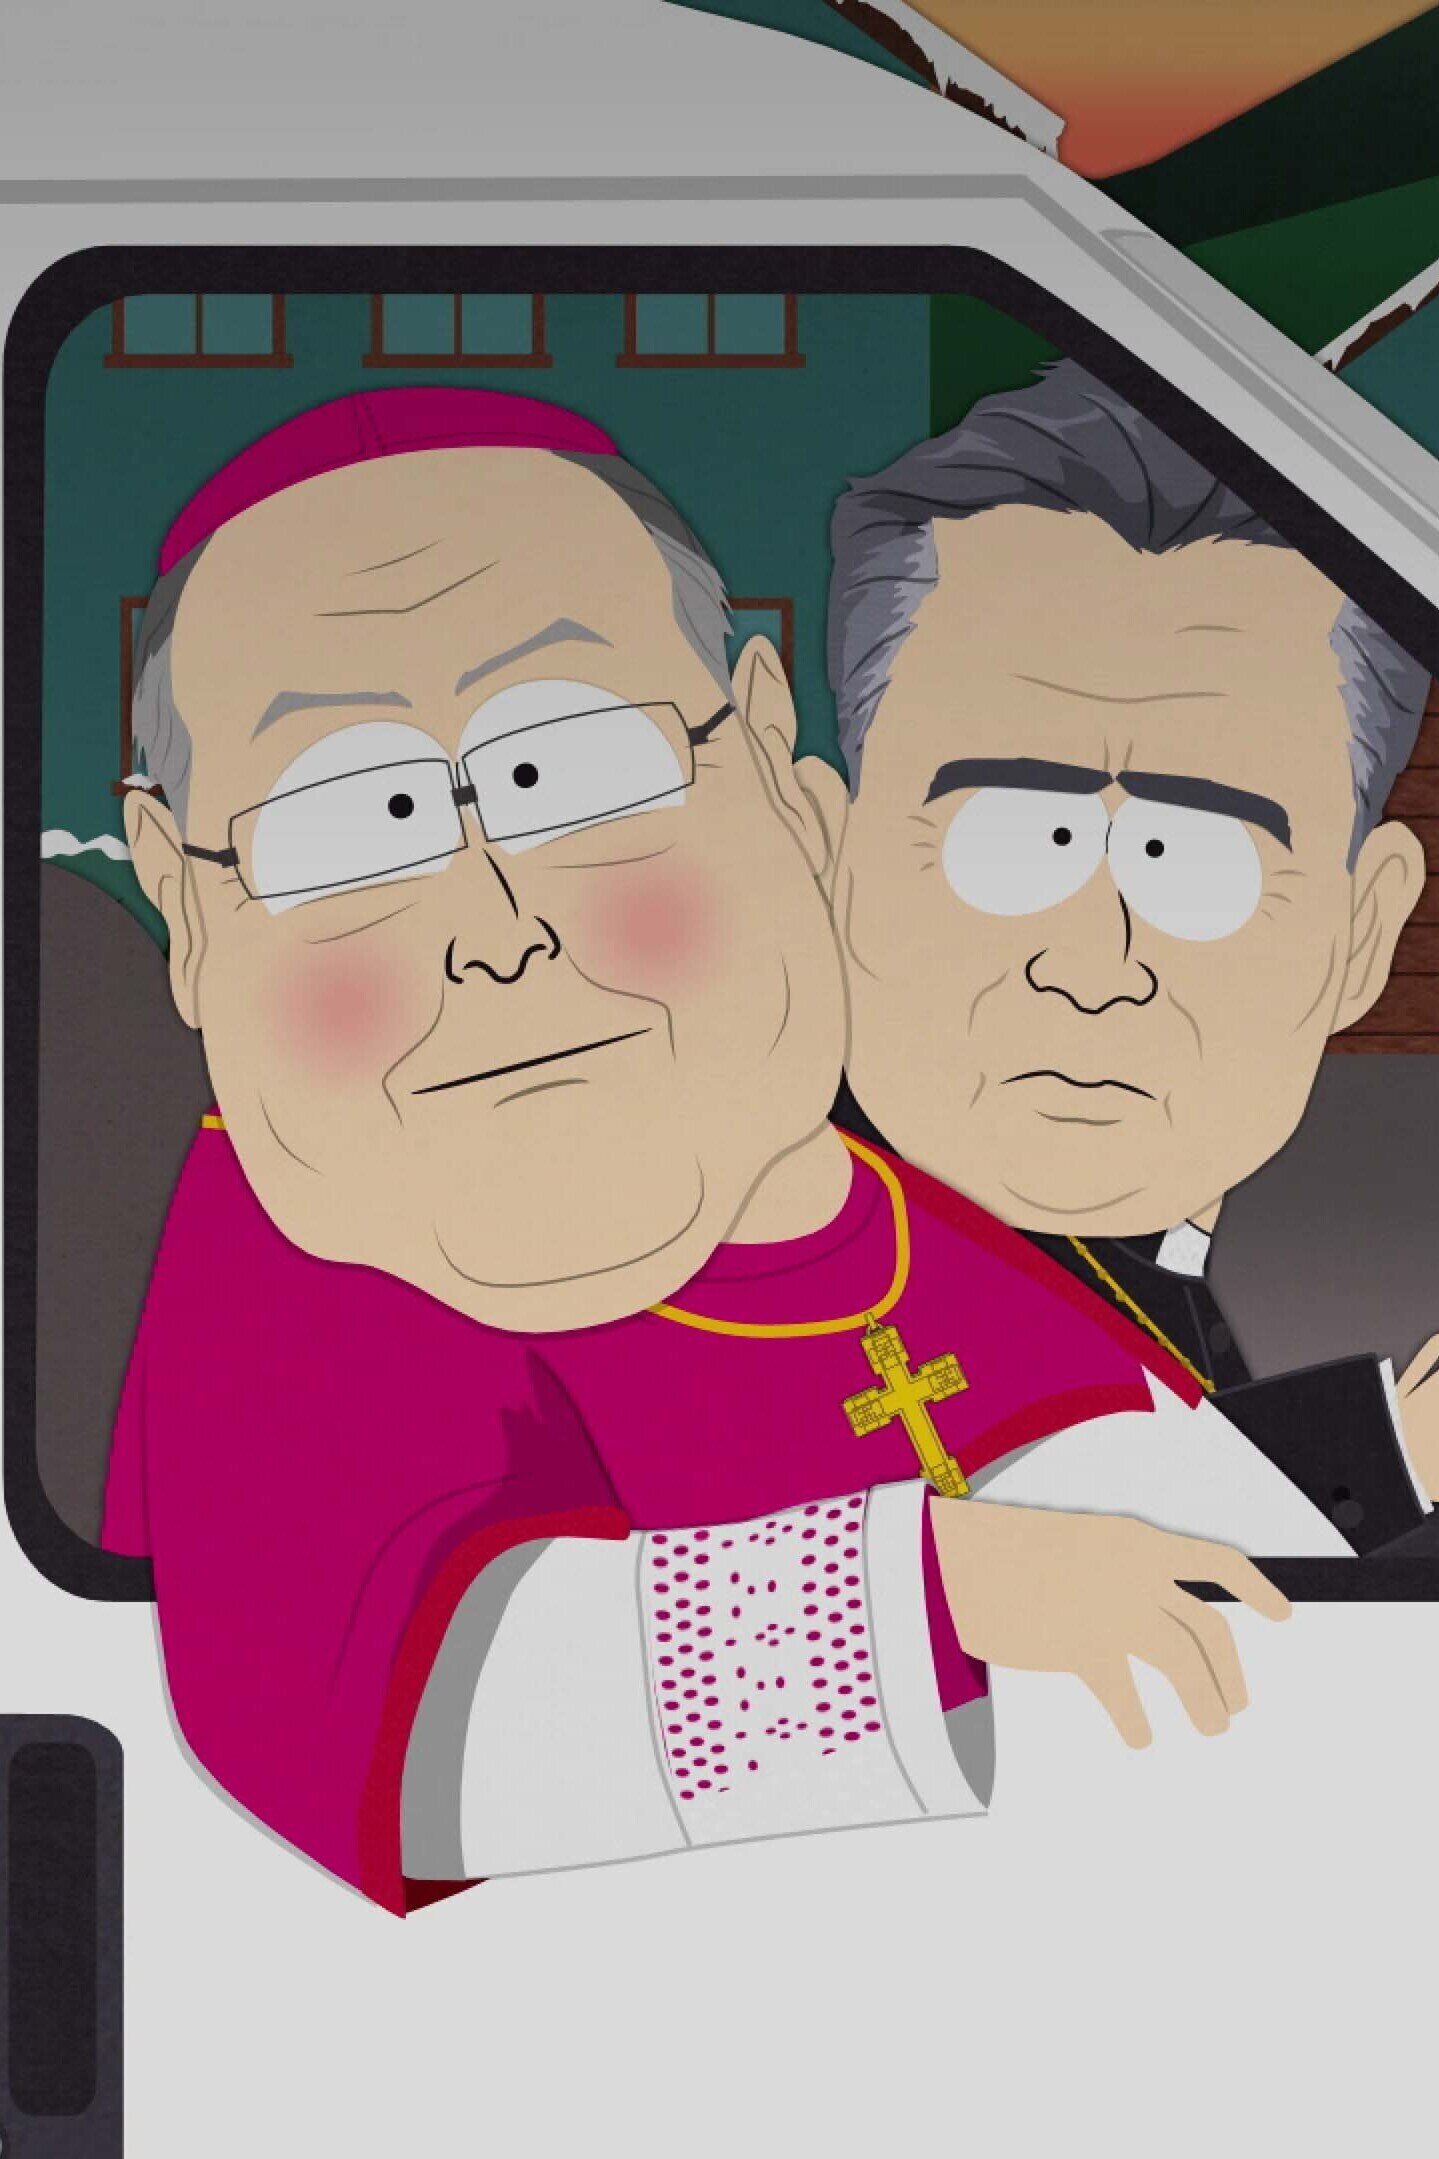 South Park - A Boy and a Priest